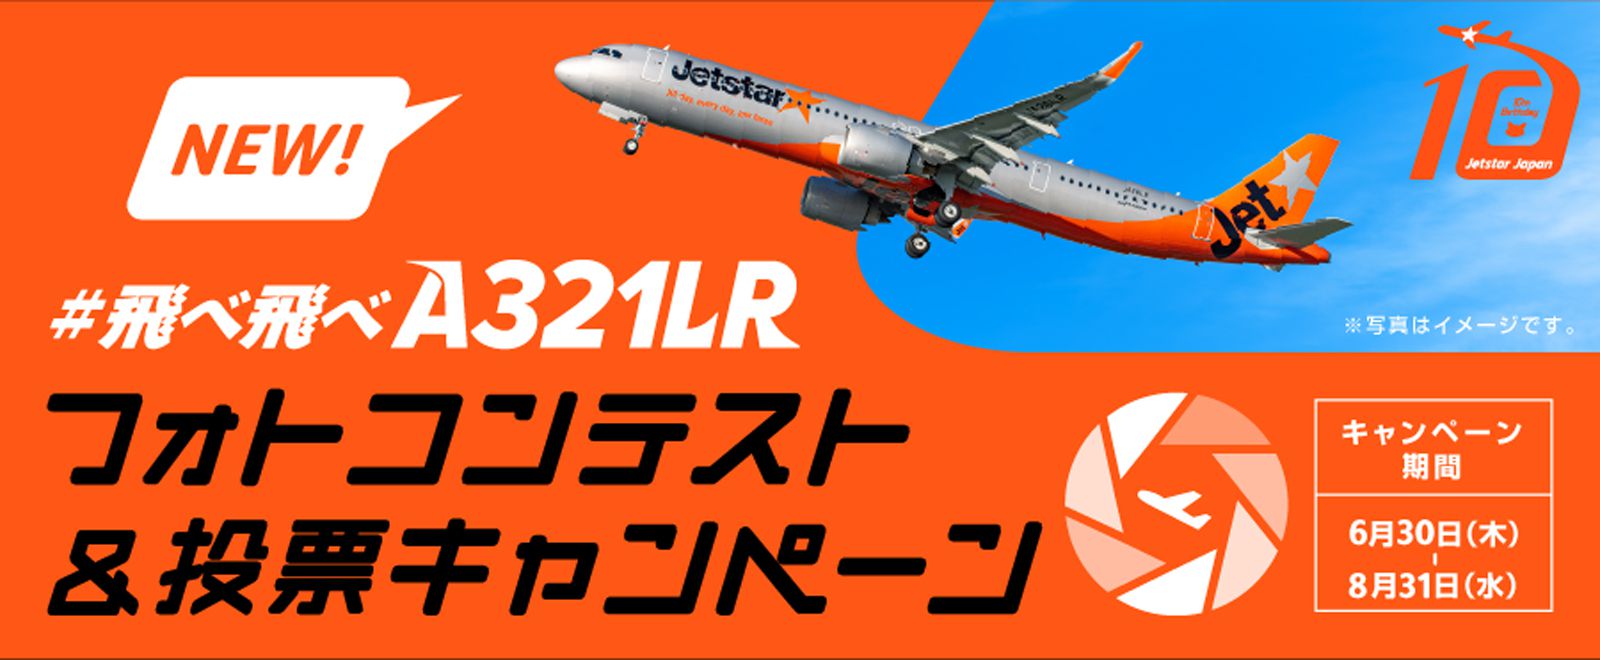 A321LRフォトコンテストキャンペーン